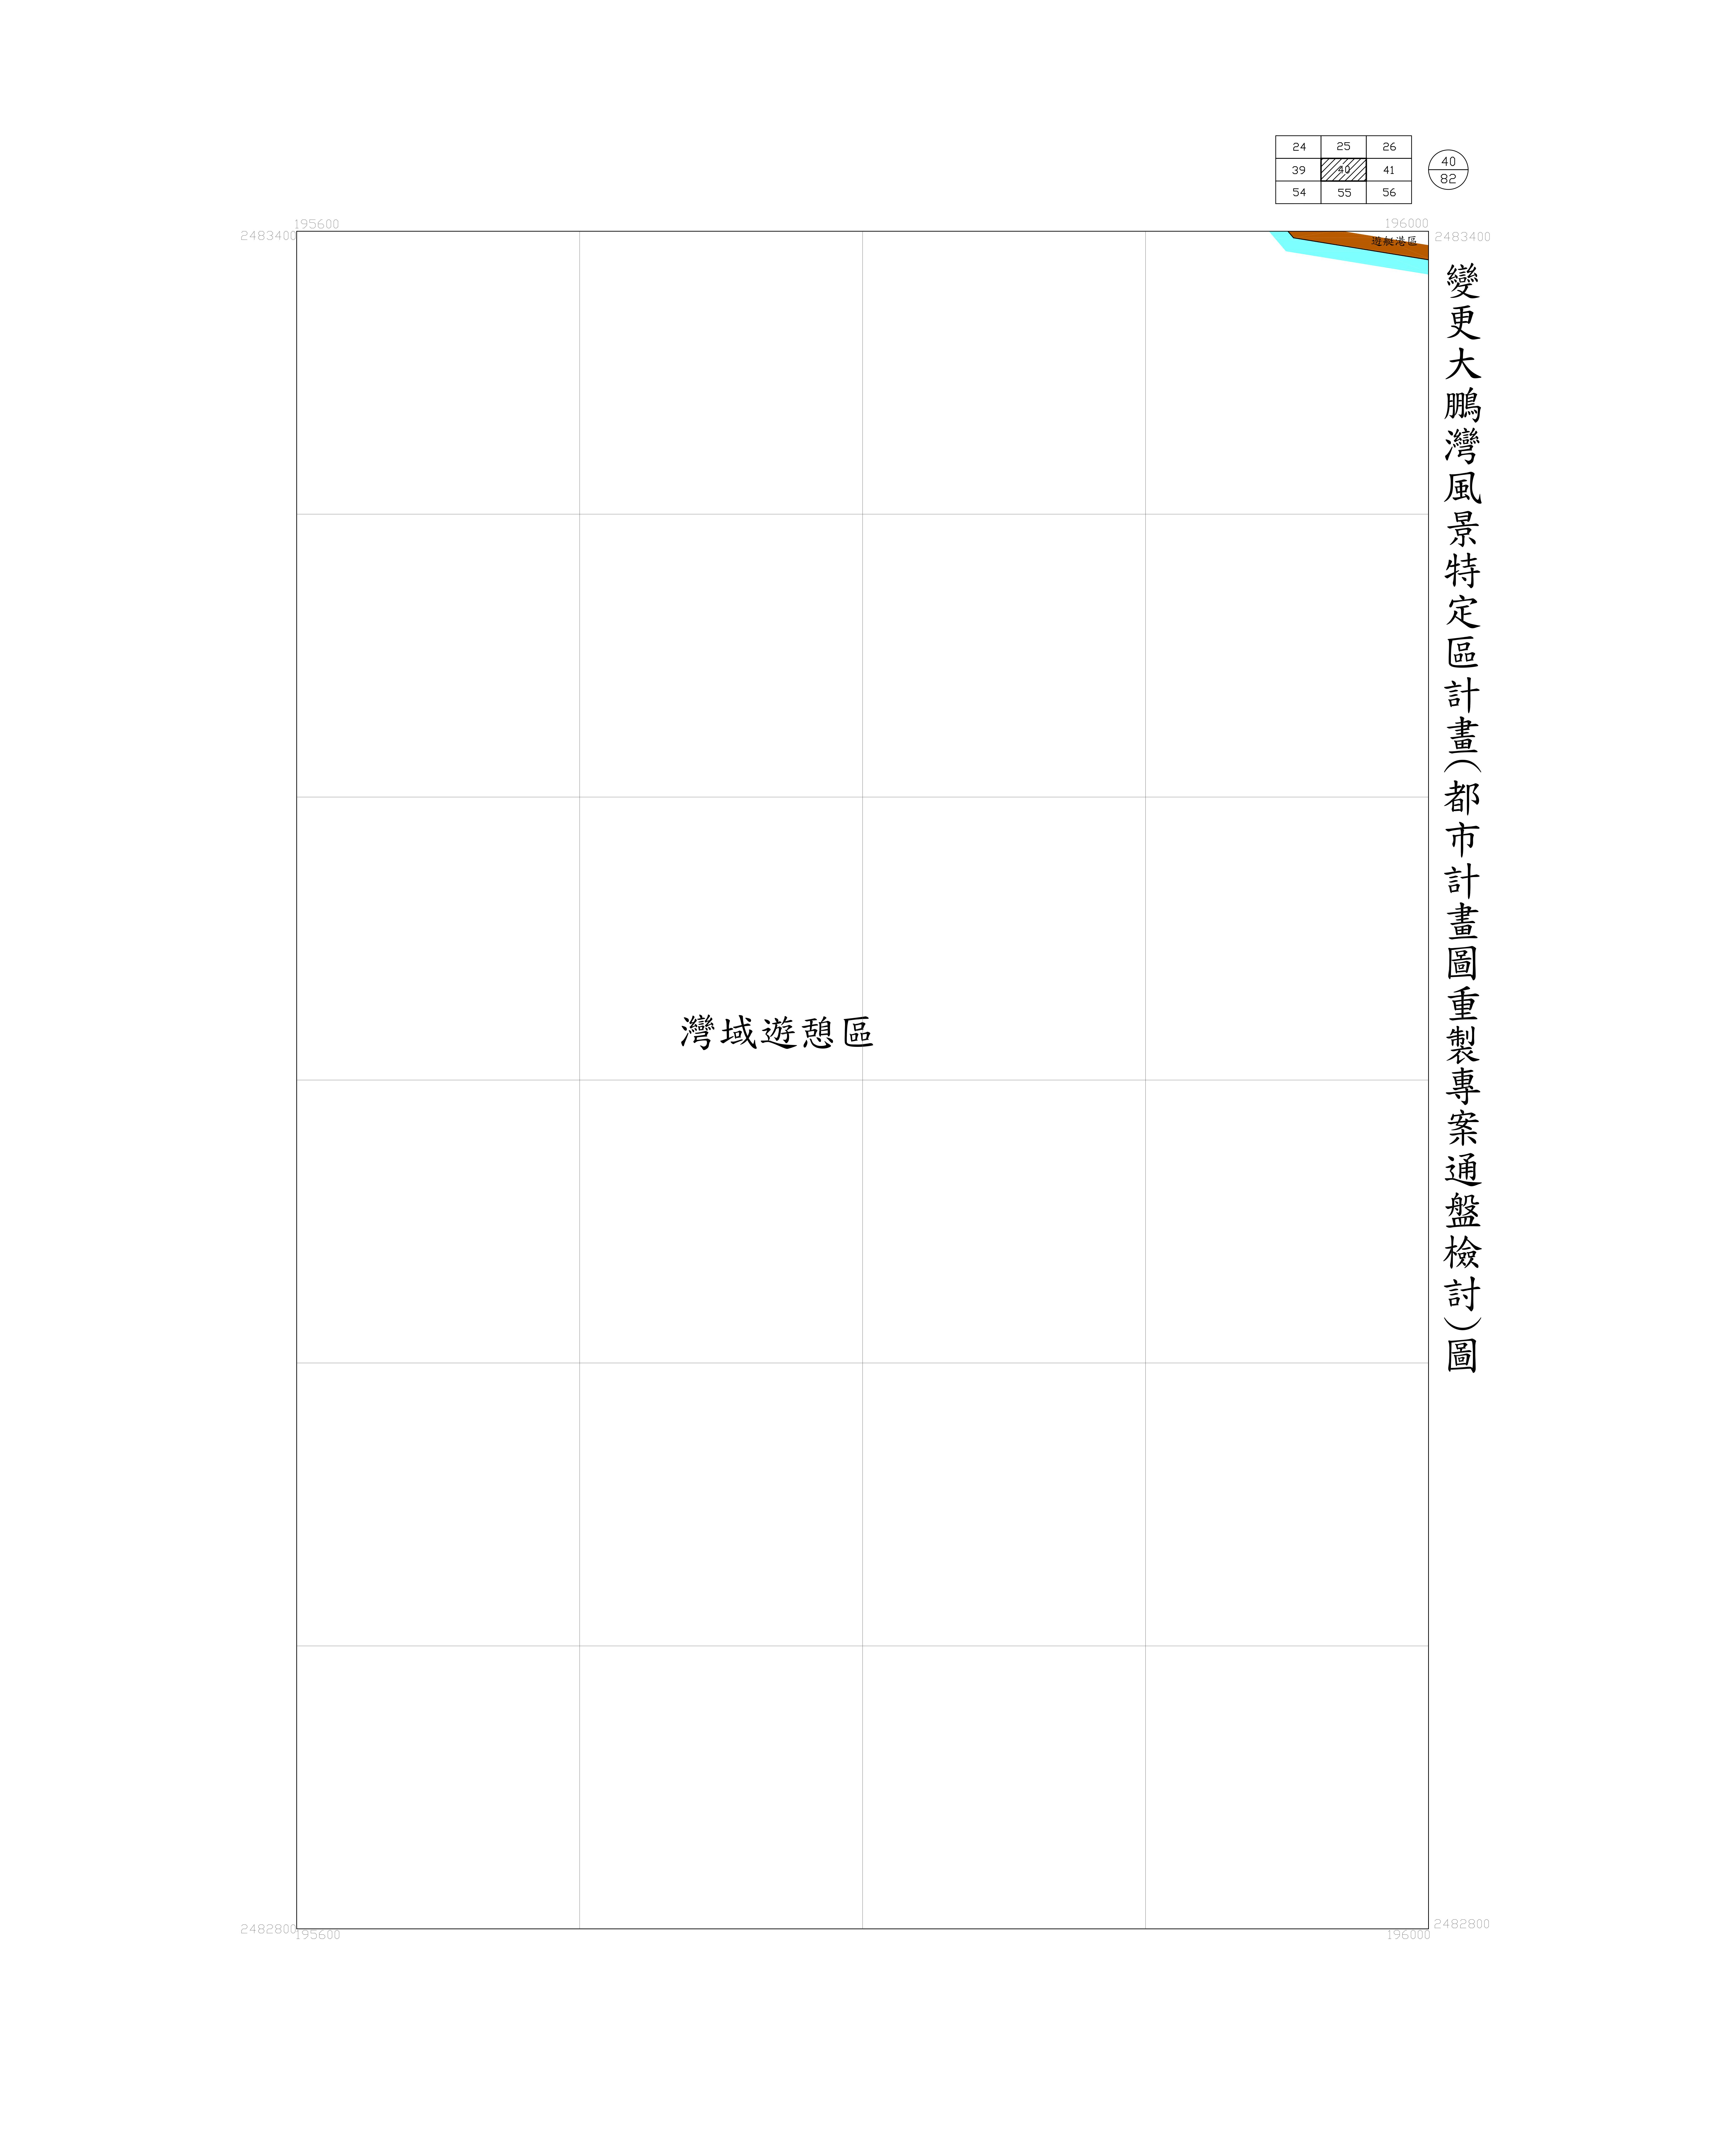 大鵬灣-都市計畫圖重製專案通盤檢討圖(核定)40-1